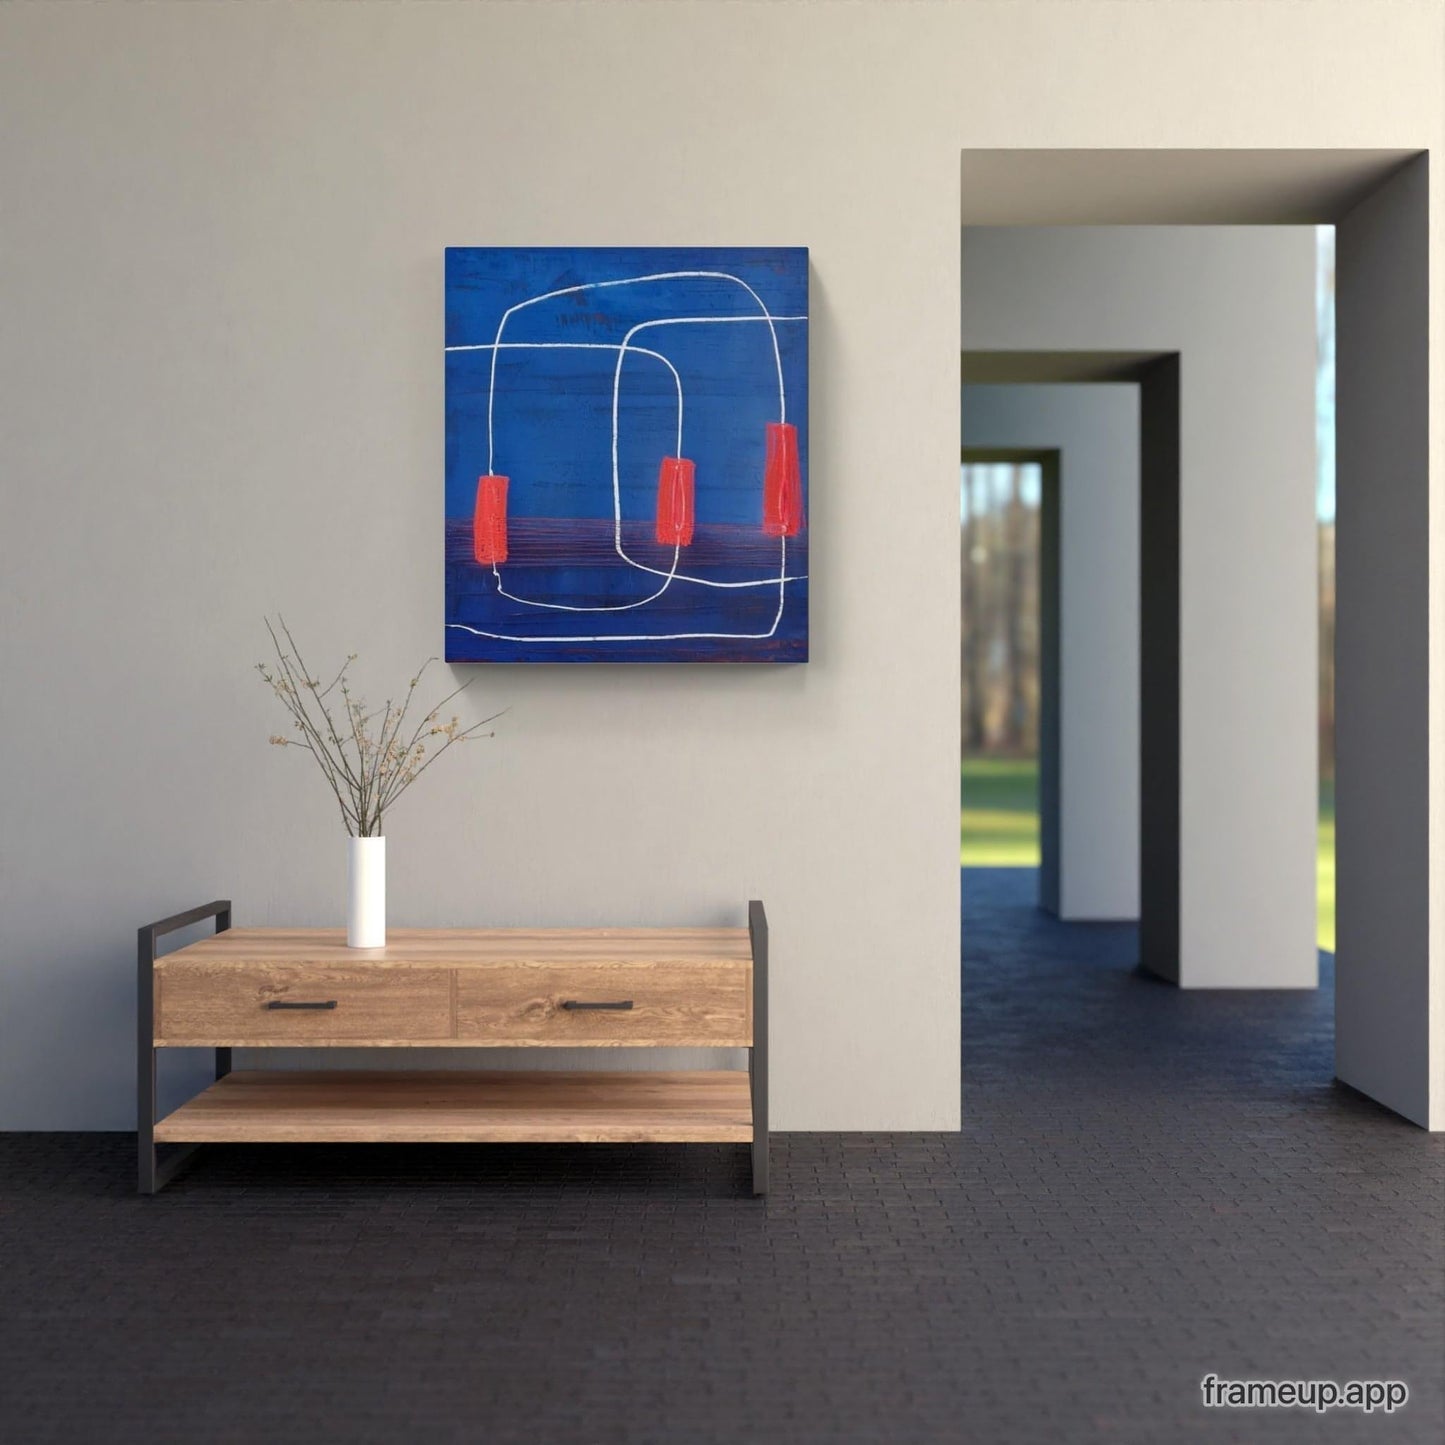 Kraftvolle Harmonie: Ein abstraktes moderndes Gemälde in Blau Rot Abstrakte Bilder & moderne Auftragsmalerei, abstrakte große bilder online kaufen, Auftrags Malere